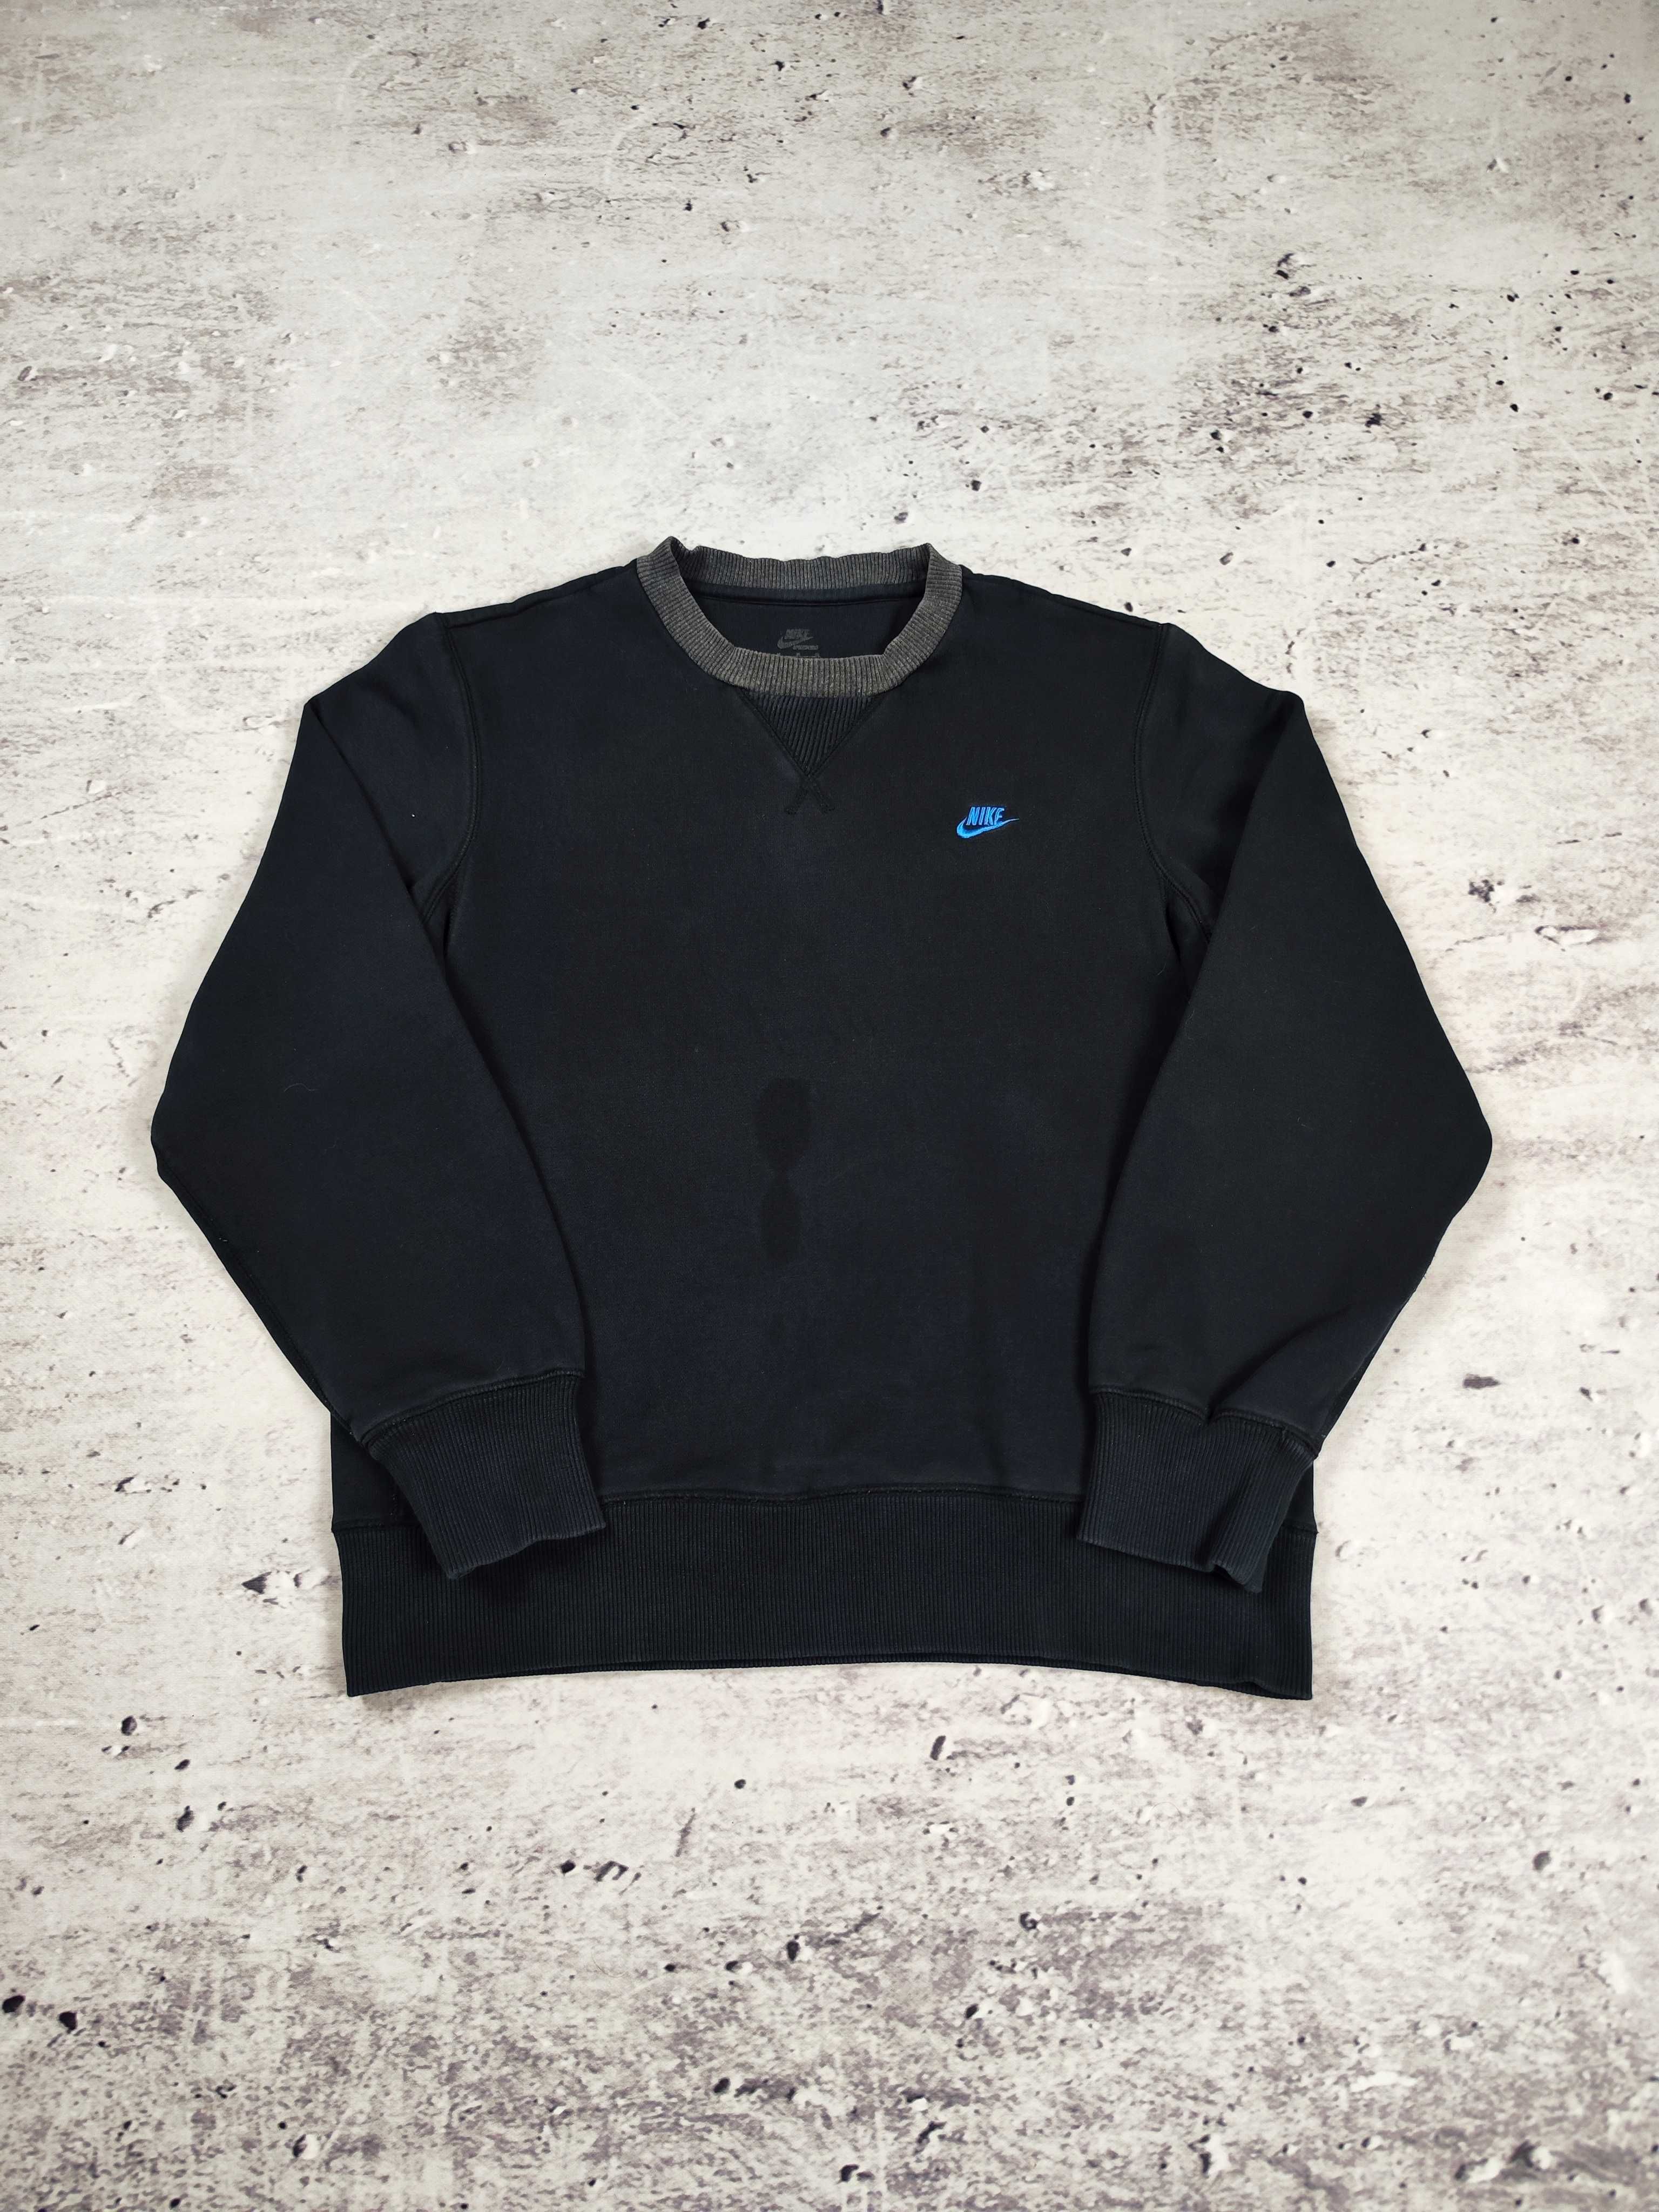 Bluza Nike czarna bawełniana boxy crewneck r. M